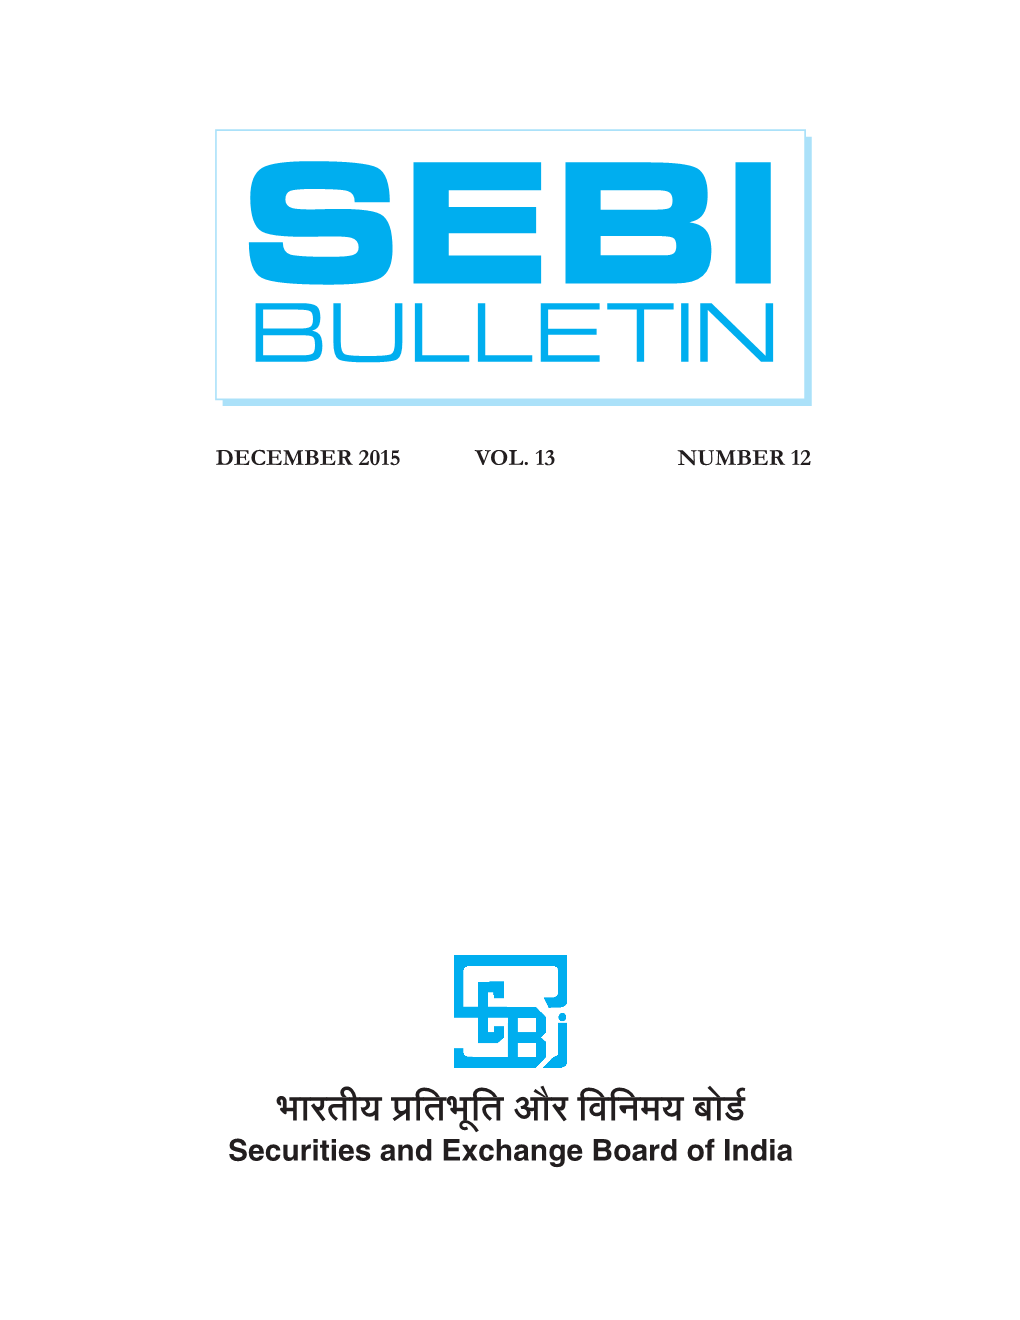 Sebi Bulletin